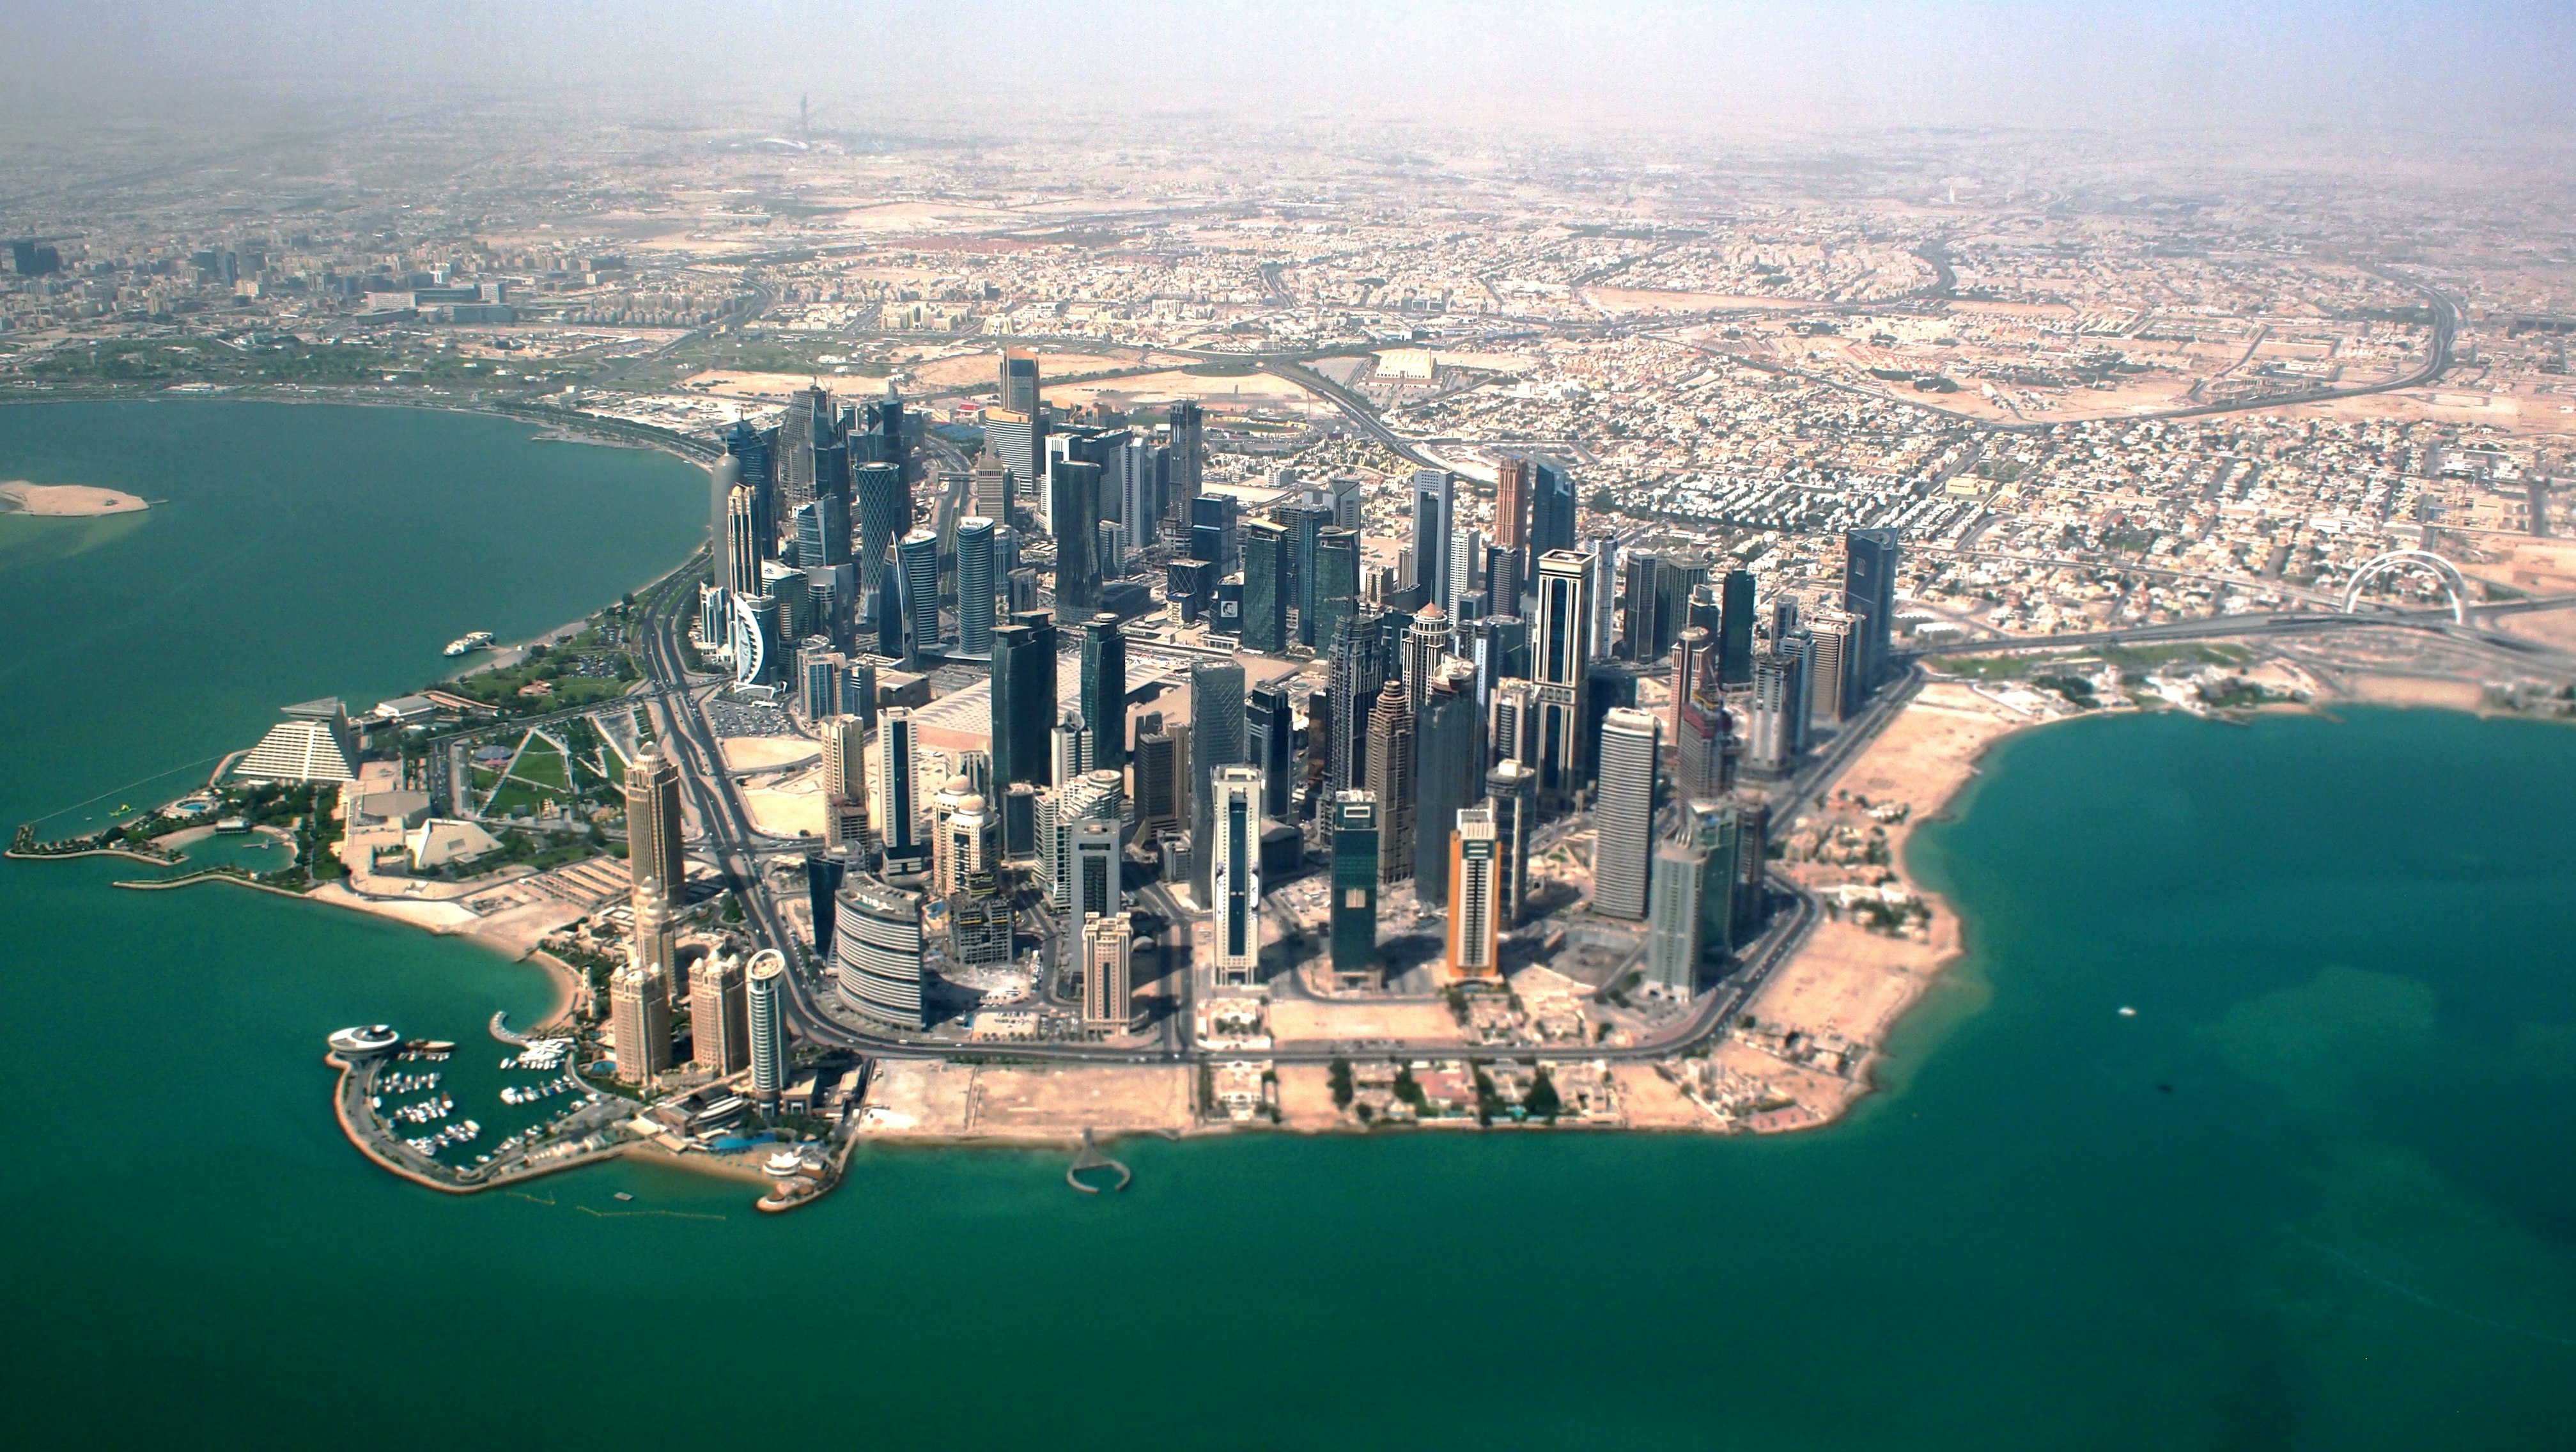 Los rascacielos del distrito de West Bay, Doha, Catar [Foto: Kazuo Ota/Unsplash]